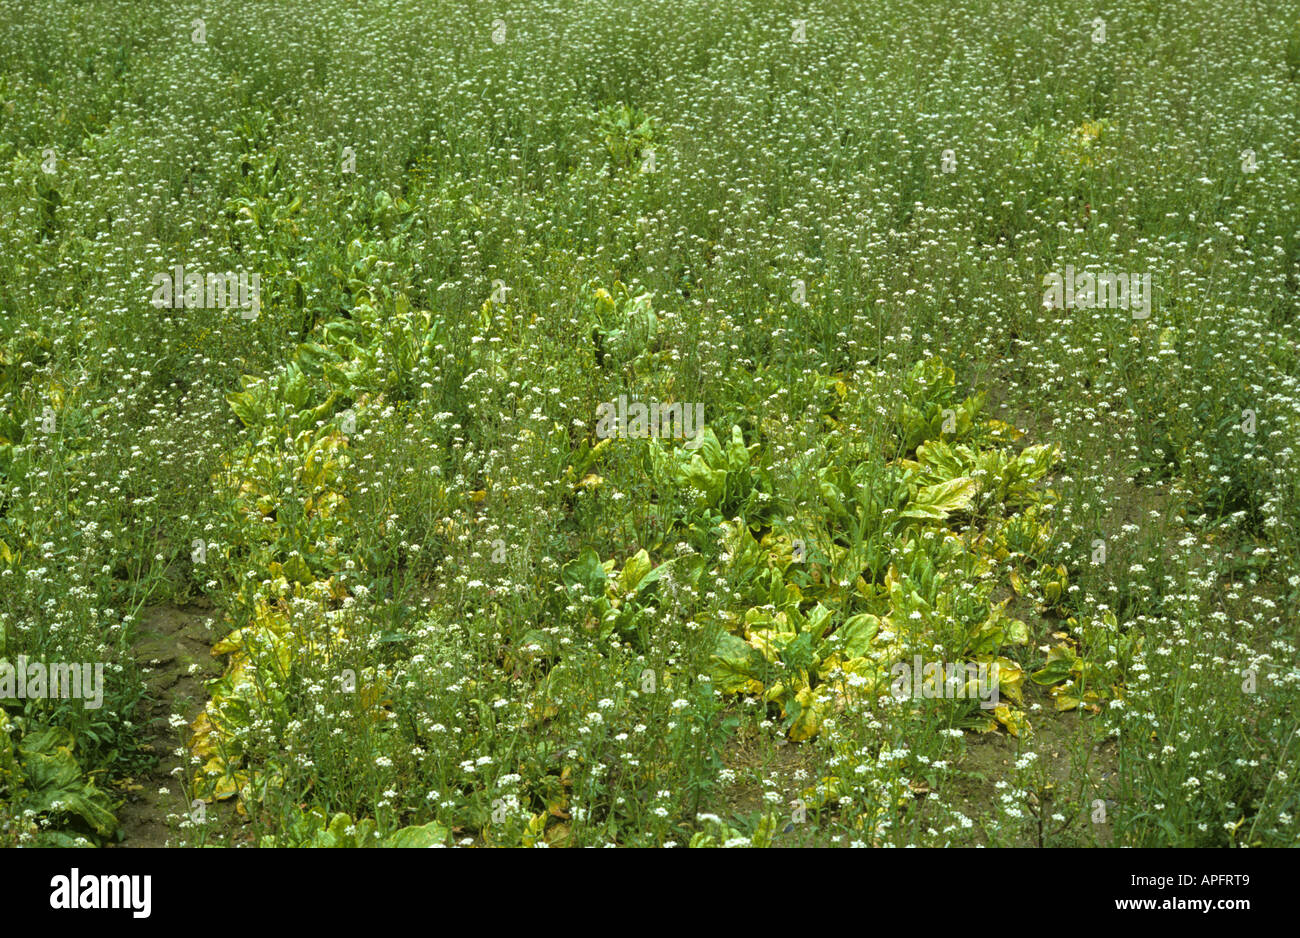 Shepherds purse Capsella bursa pastoris flowering in severely weakened sugar beet crop Stock Photo